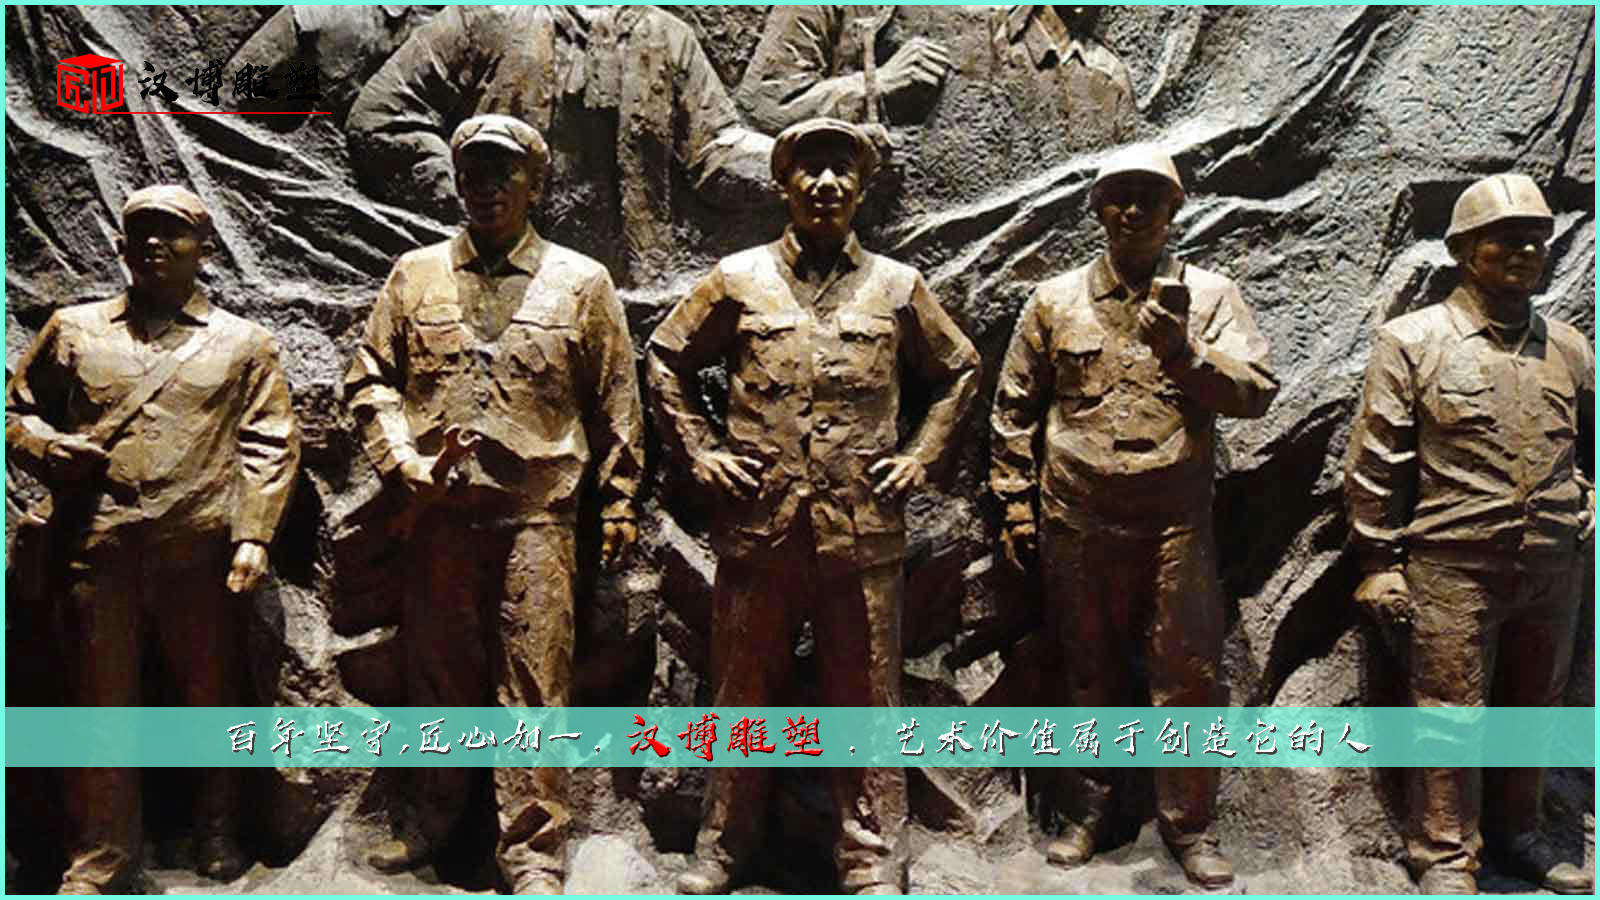 工人铸铜雕塑,以钢铁般的意志疾步前行